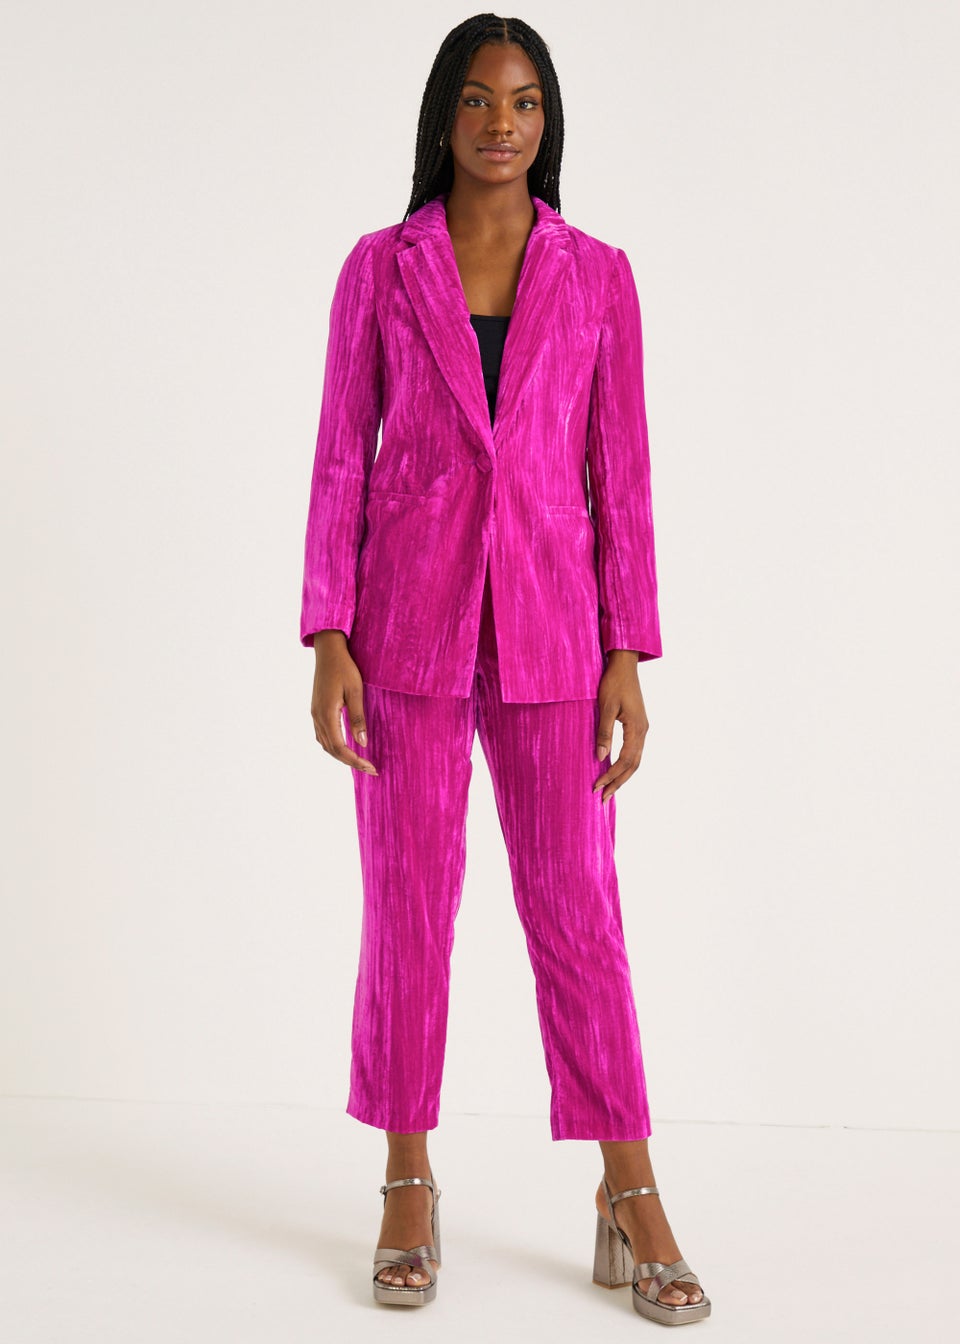 ATTENTIF PARIS LADIES Hot Pink Velvet Trouser Single Breasted Suit Size 12  £45.00 - PicClick UK